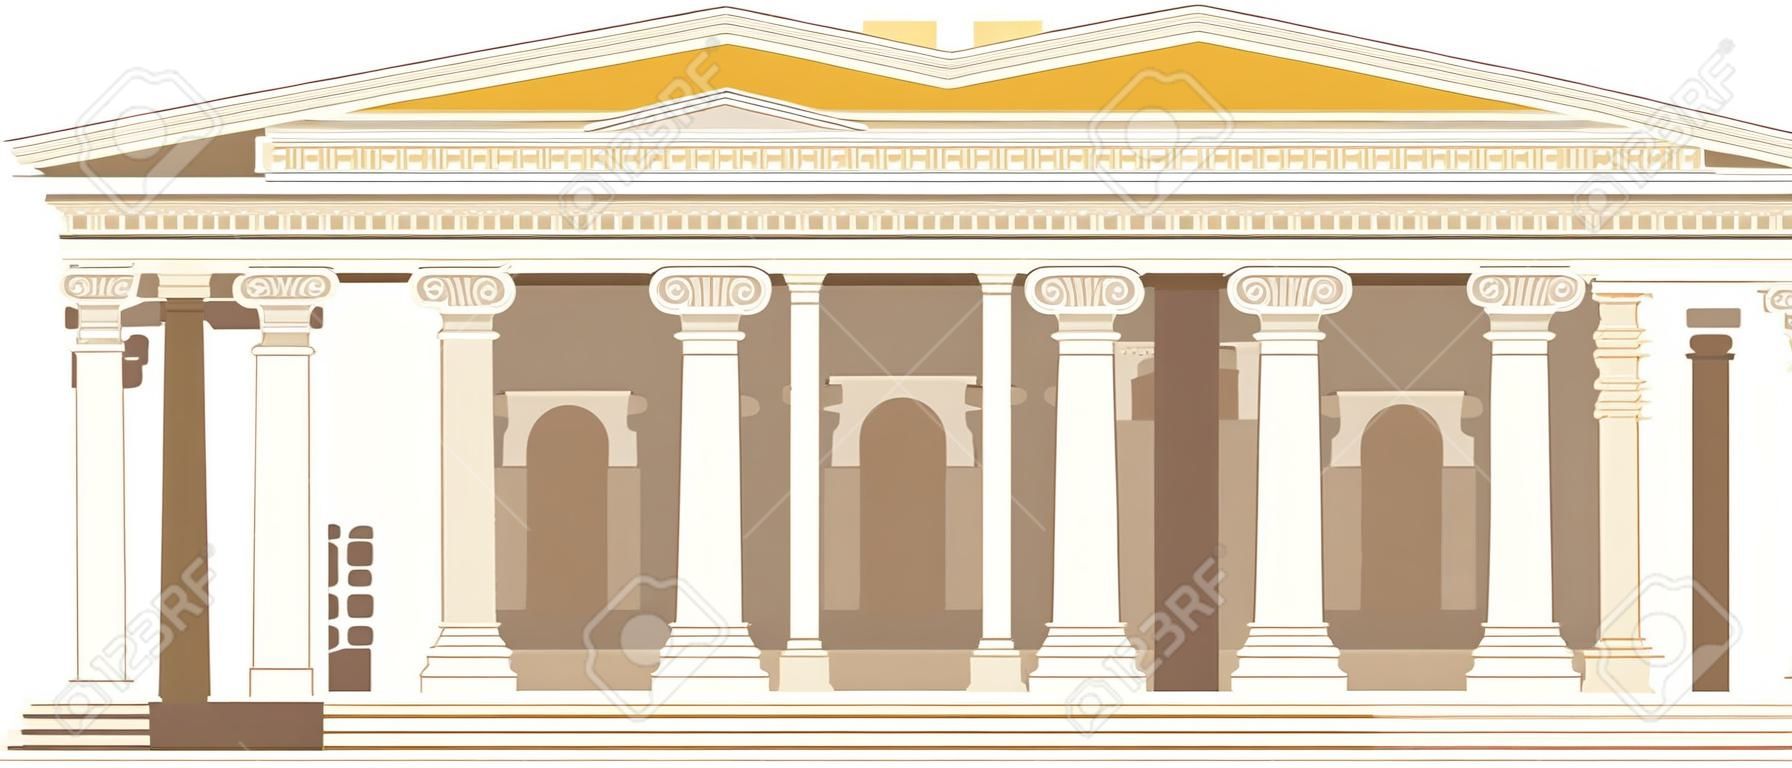 Colonne du temple du panthéon romain antique construisant des tuiles de rome, développement stratégique de la culture antique. Point de repère italien Panthéon, ancien temple sur la place de la ville. Paysage historique traditionnel des temps anciens